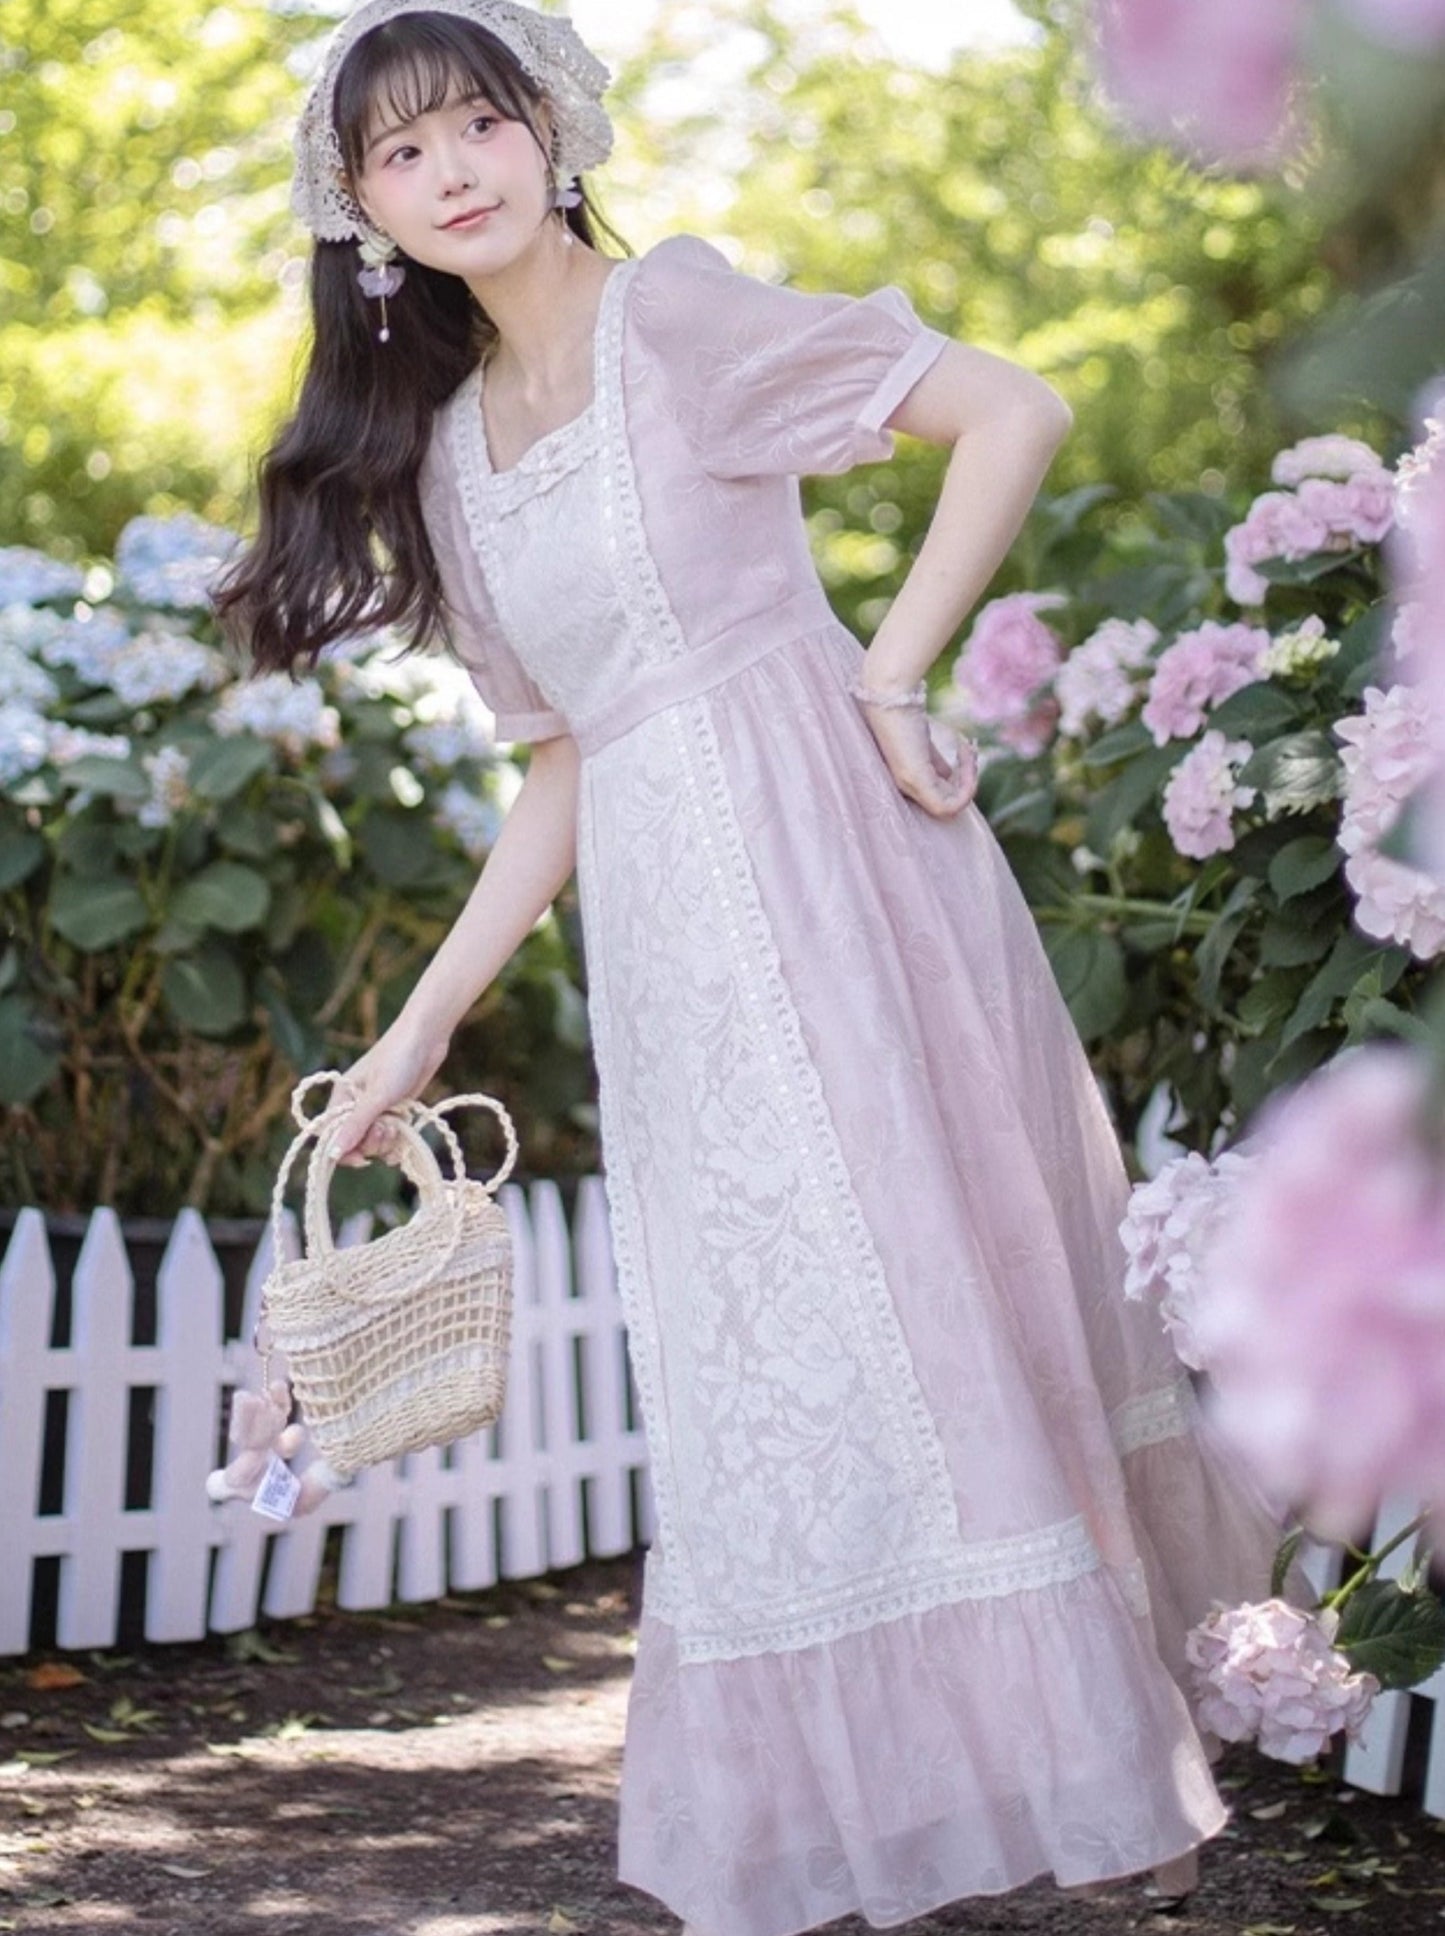 우대 품목: 하트비트 블루밍 포레스트 드레스 199위안 상세페이지에서 쿠폰을 받아 주문할 수 있다.